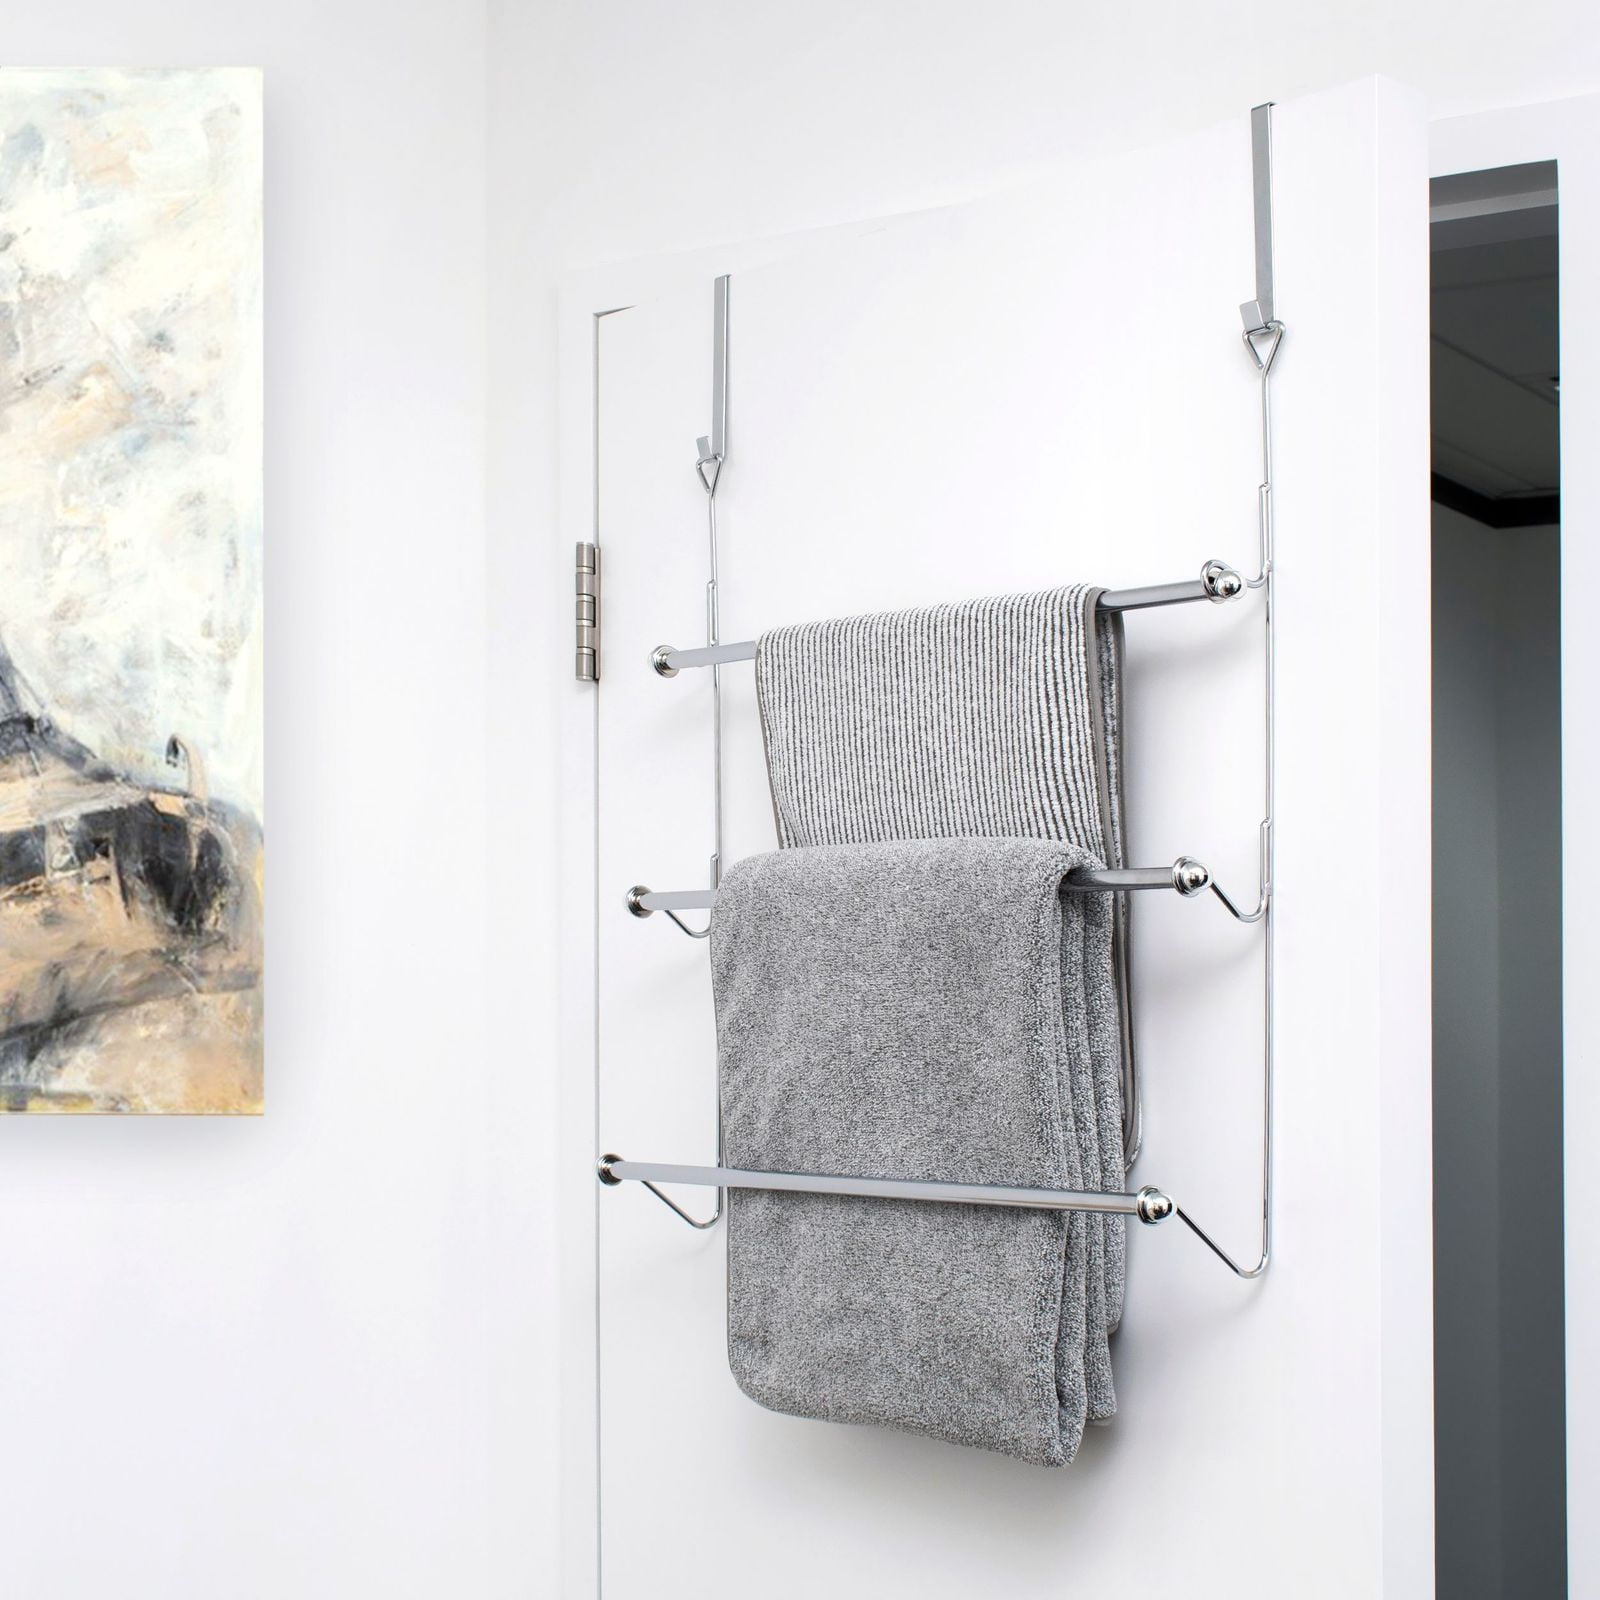 3 Tier Chrome Over Door Towel Rail Rack Hanger Holder Bathroom